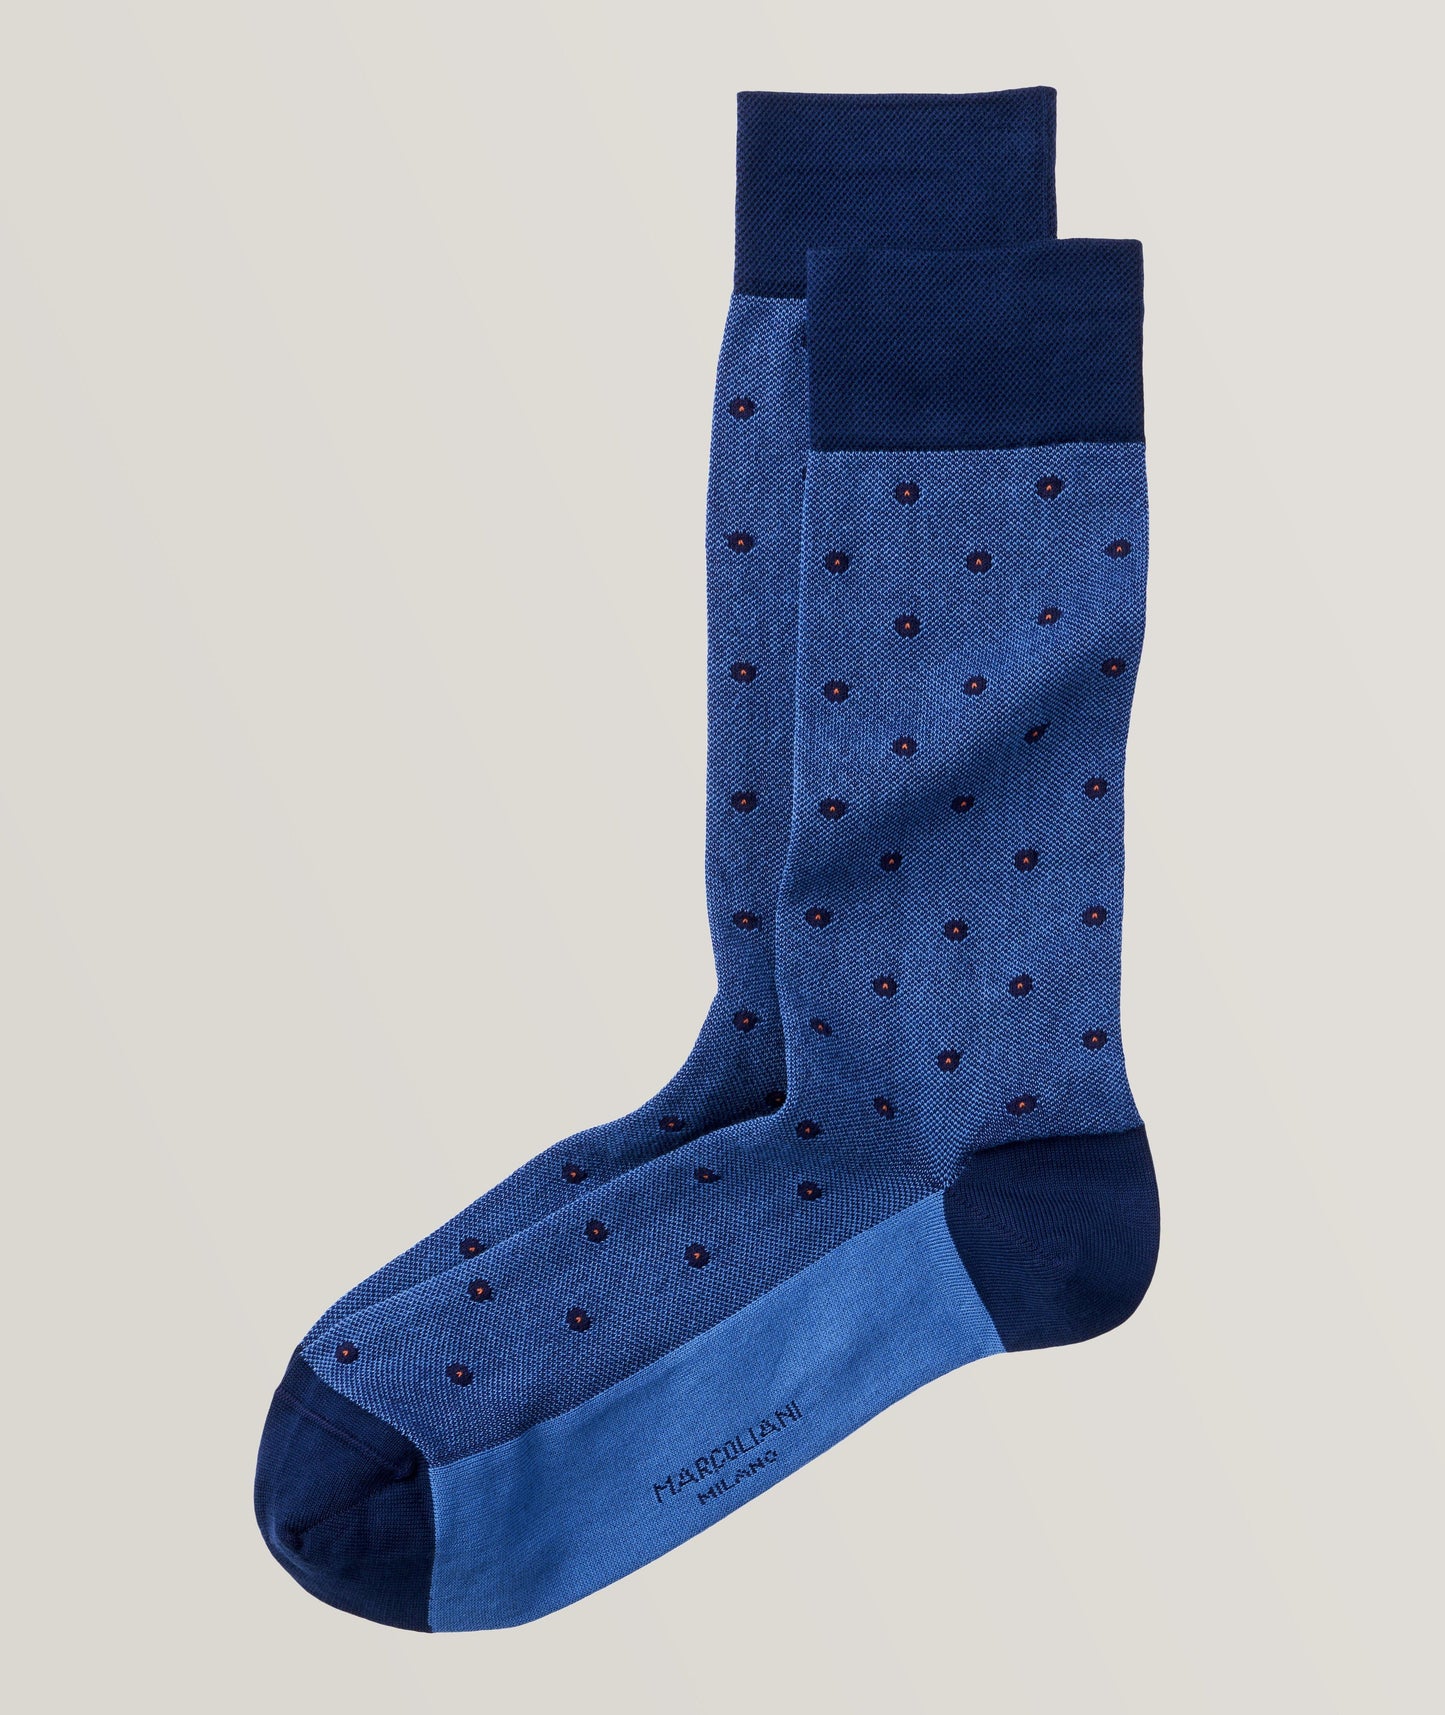 Marcoliani - Chaussettes en coton piqué classique à pois - Bleu